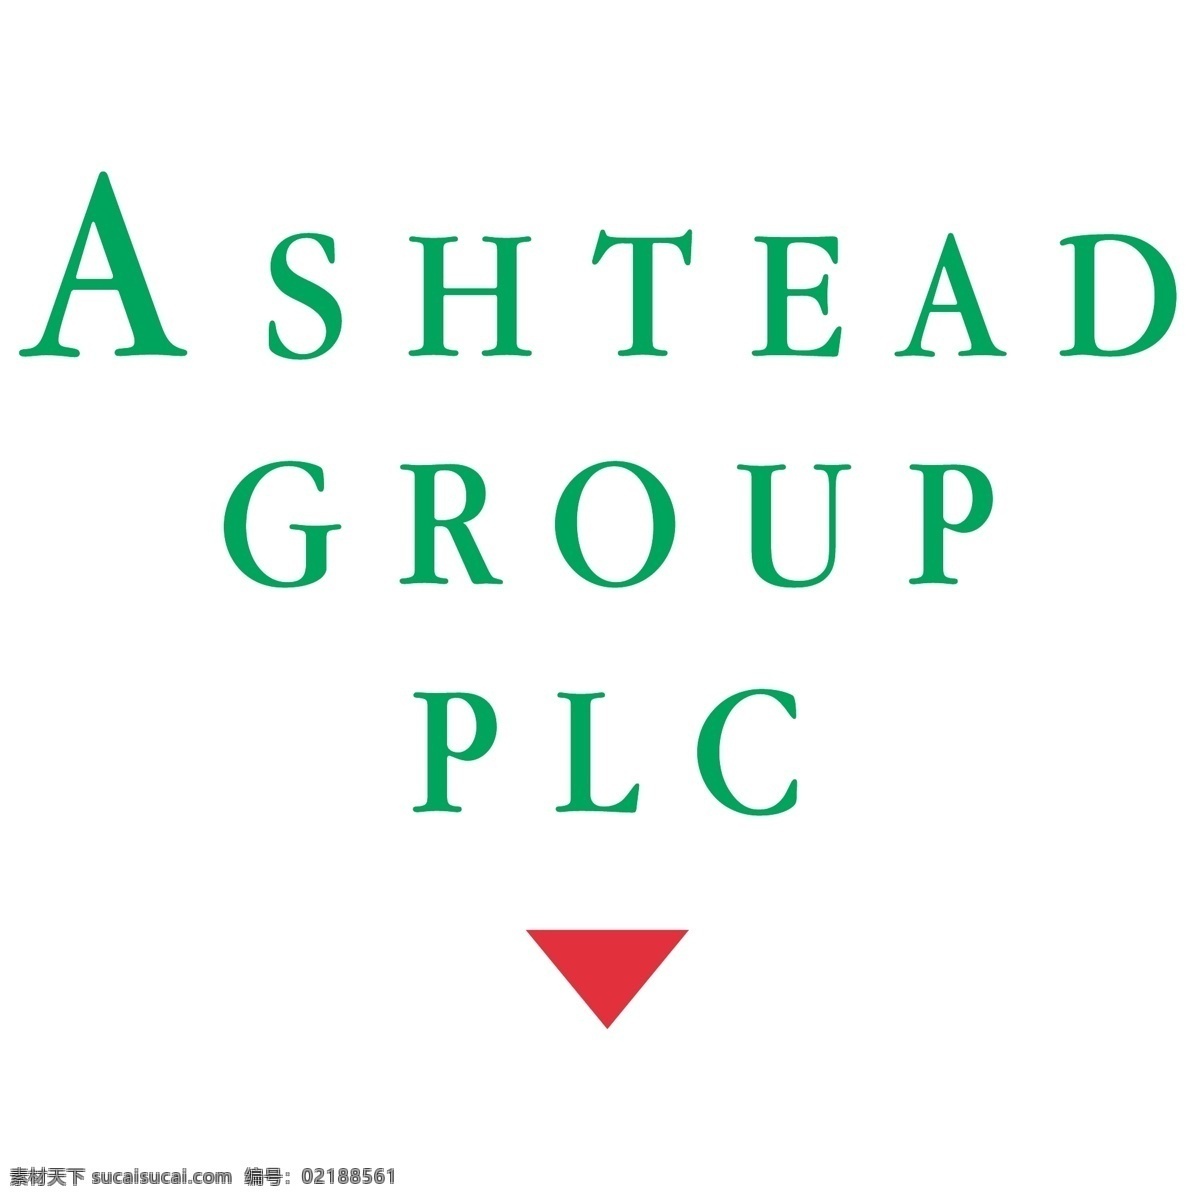 阿什 特德 组 标识 公司 免费 品牌 品牌标识 商标 矢量标志下载 免费矢量标识 矢量 psd源文件 logo设计